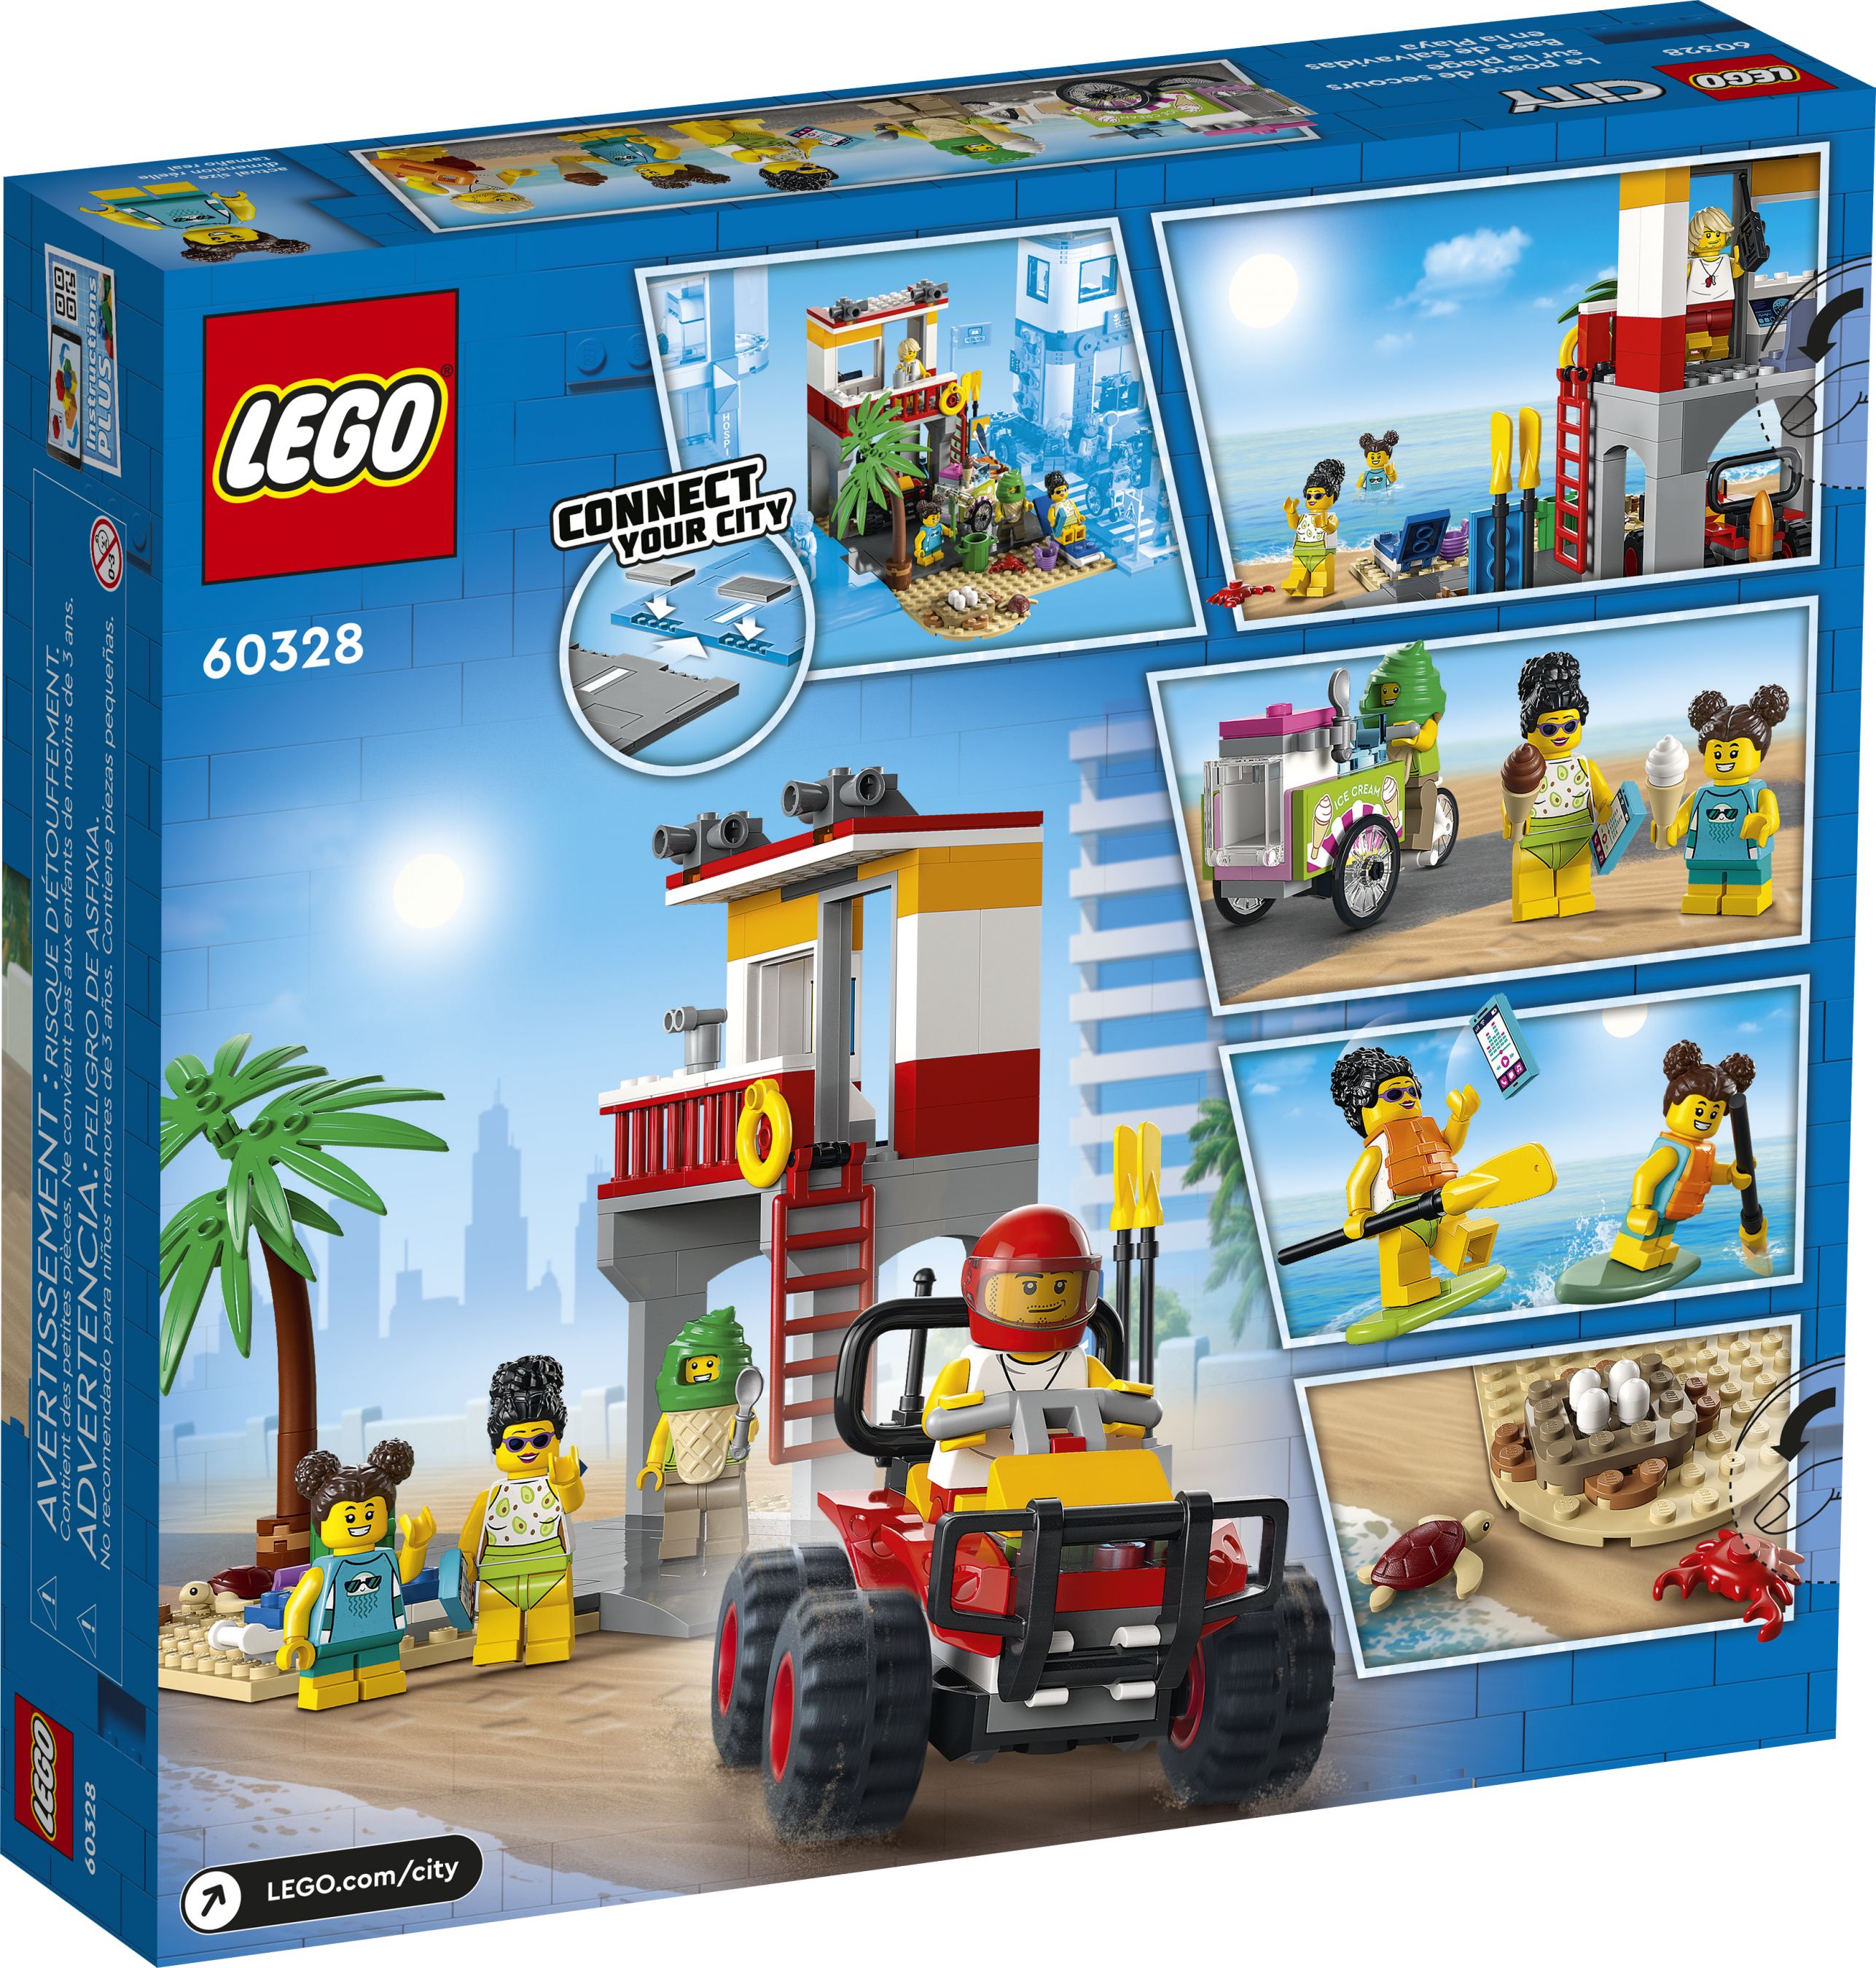 LEGO City 60328 Rettungsschwimmer-Station LEGO_60328_Box5_v39.jpg